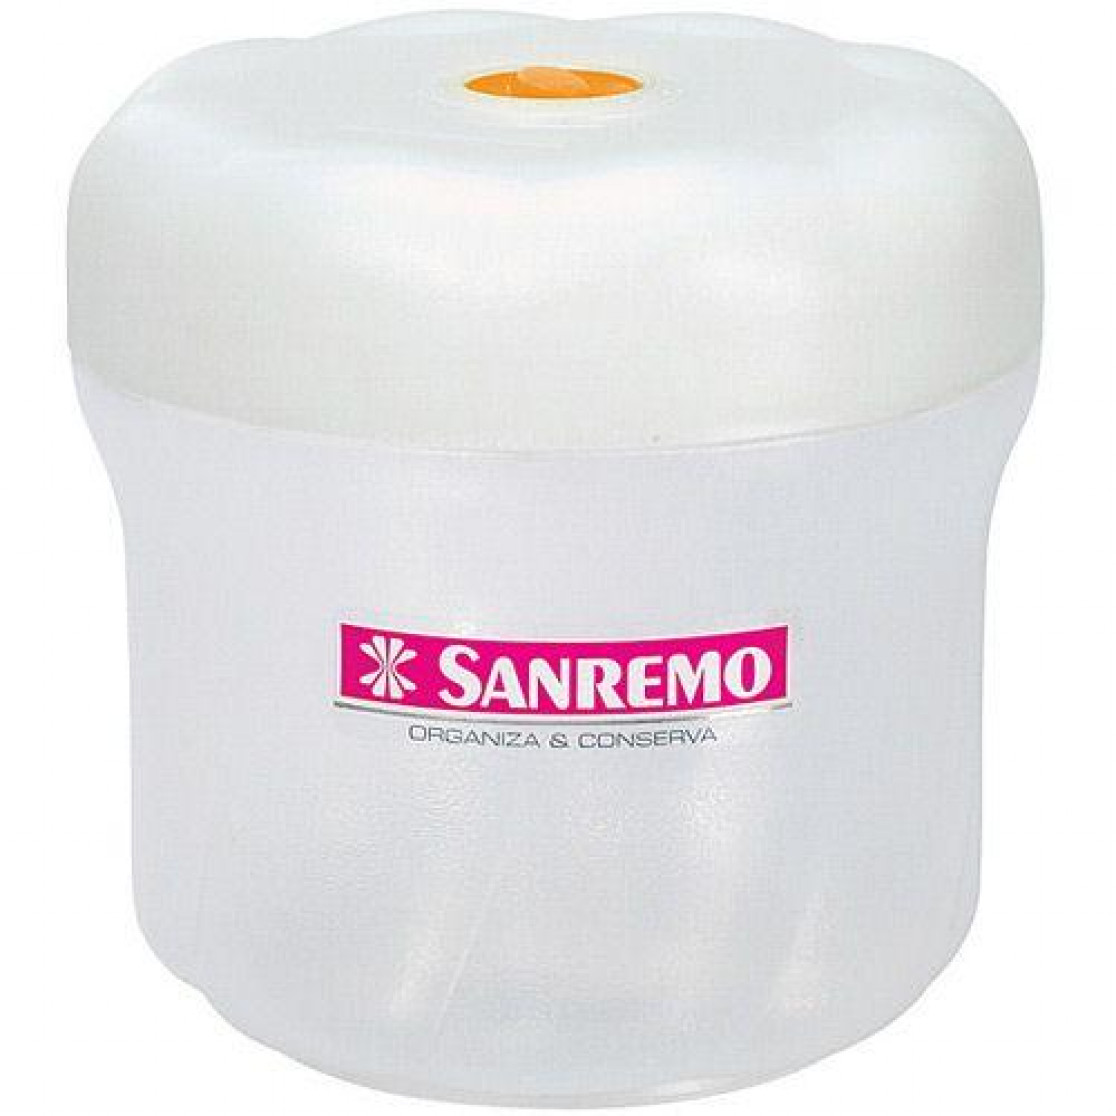 Pote Hermetico Roscado 1400 ml - Sanremo